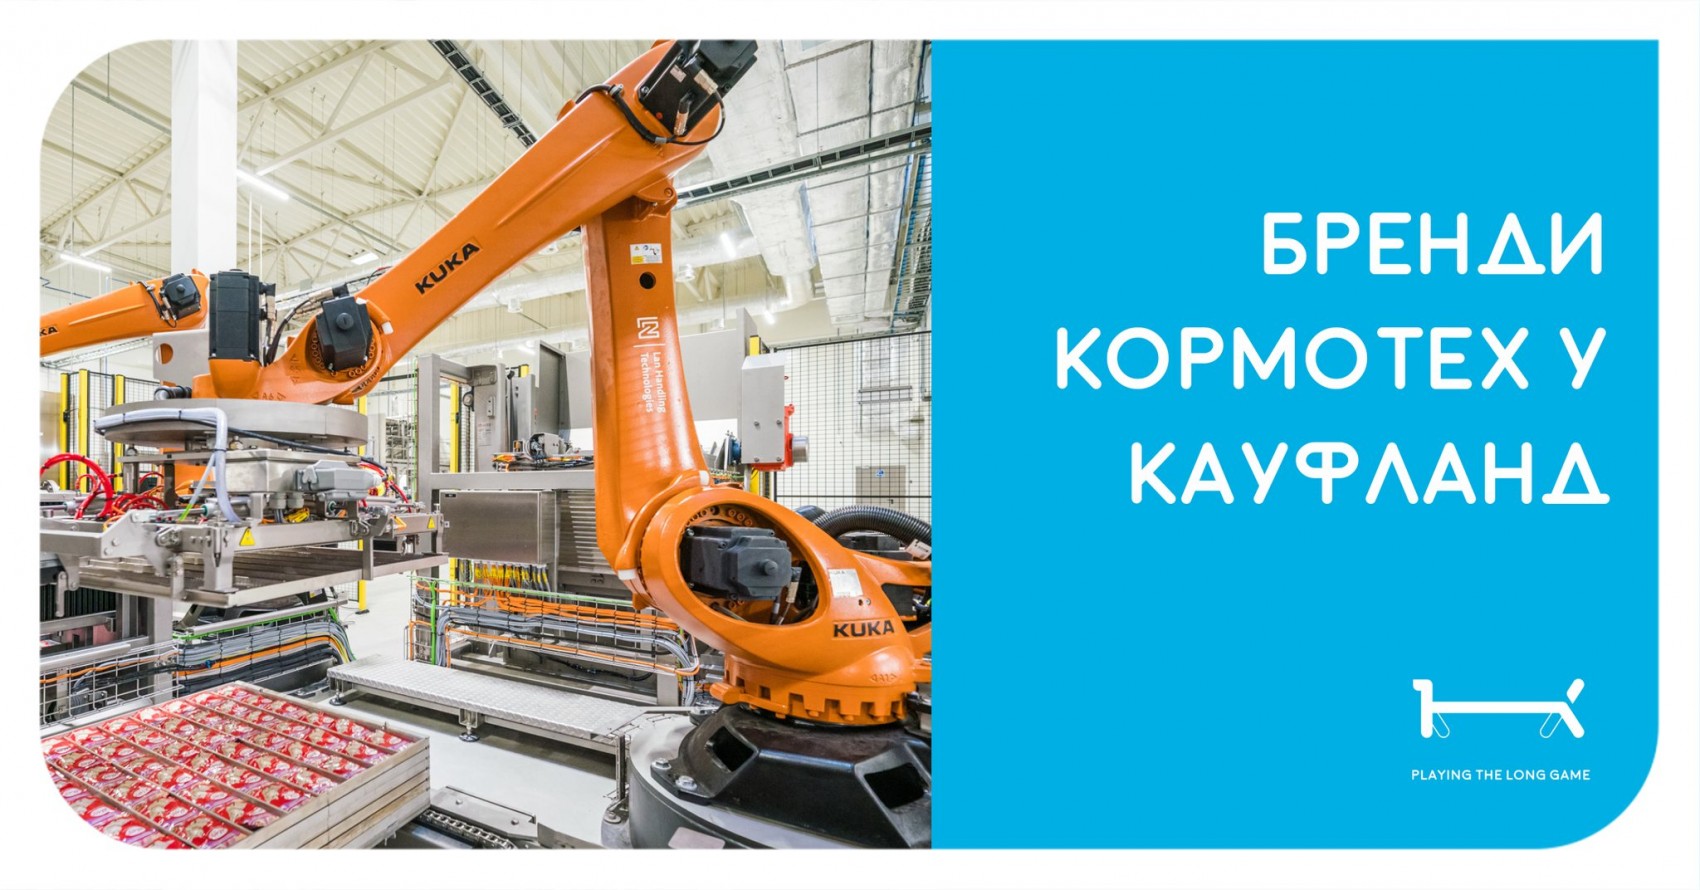 Продукти Kormotech з’являться на полицях ще однієї мережі в Європі -Kaufland